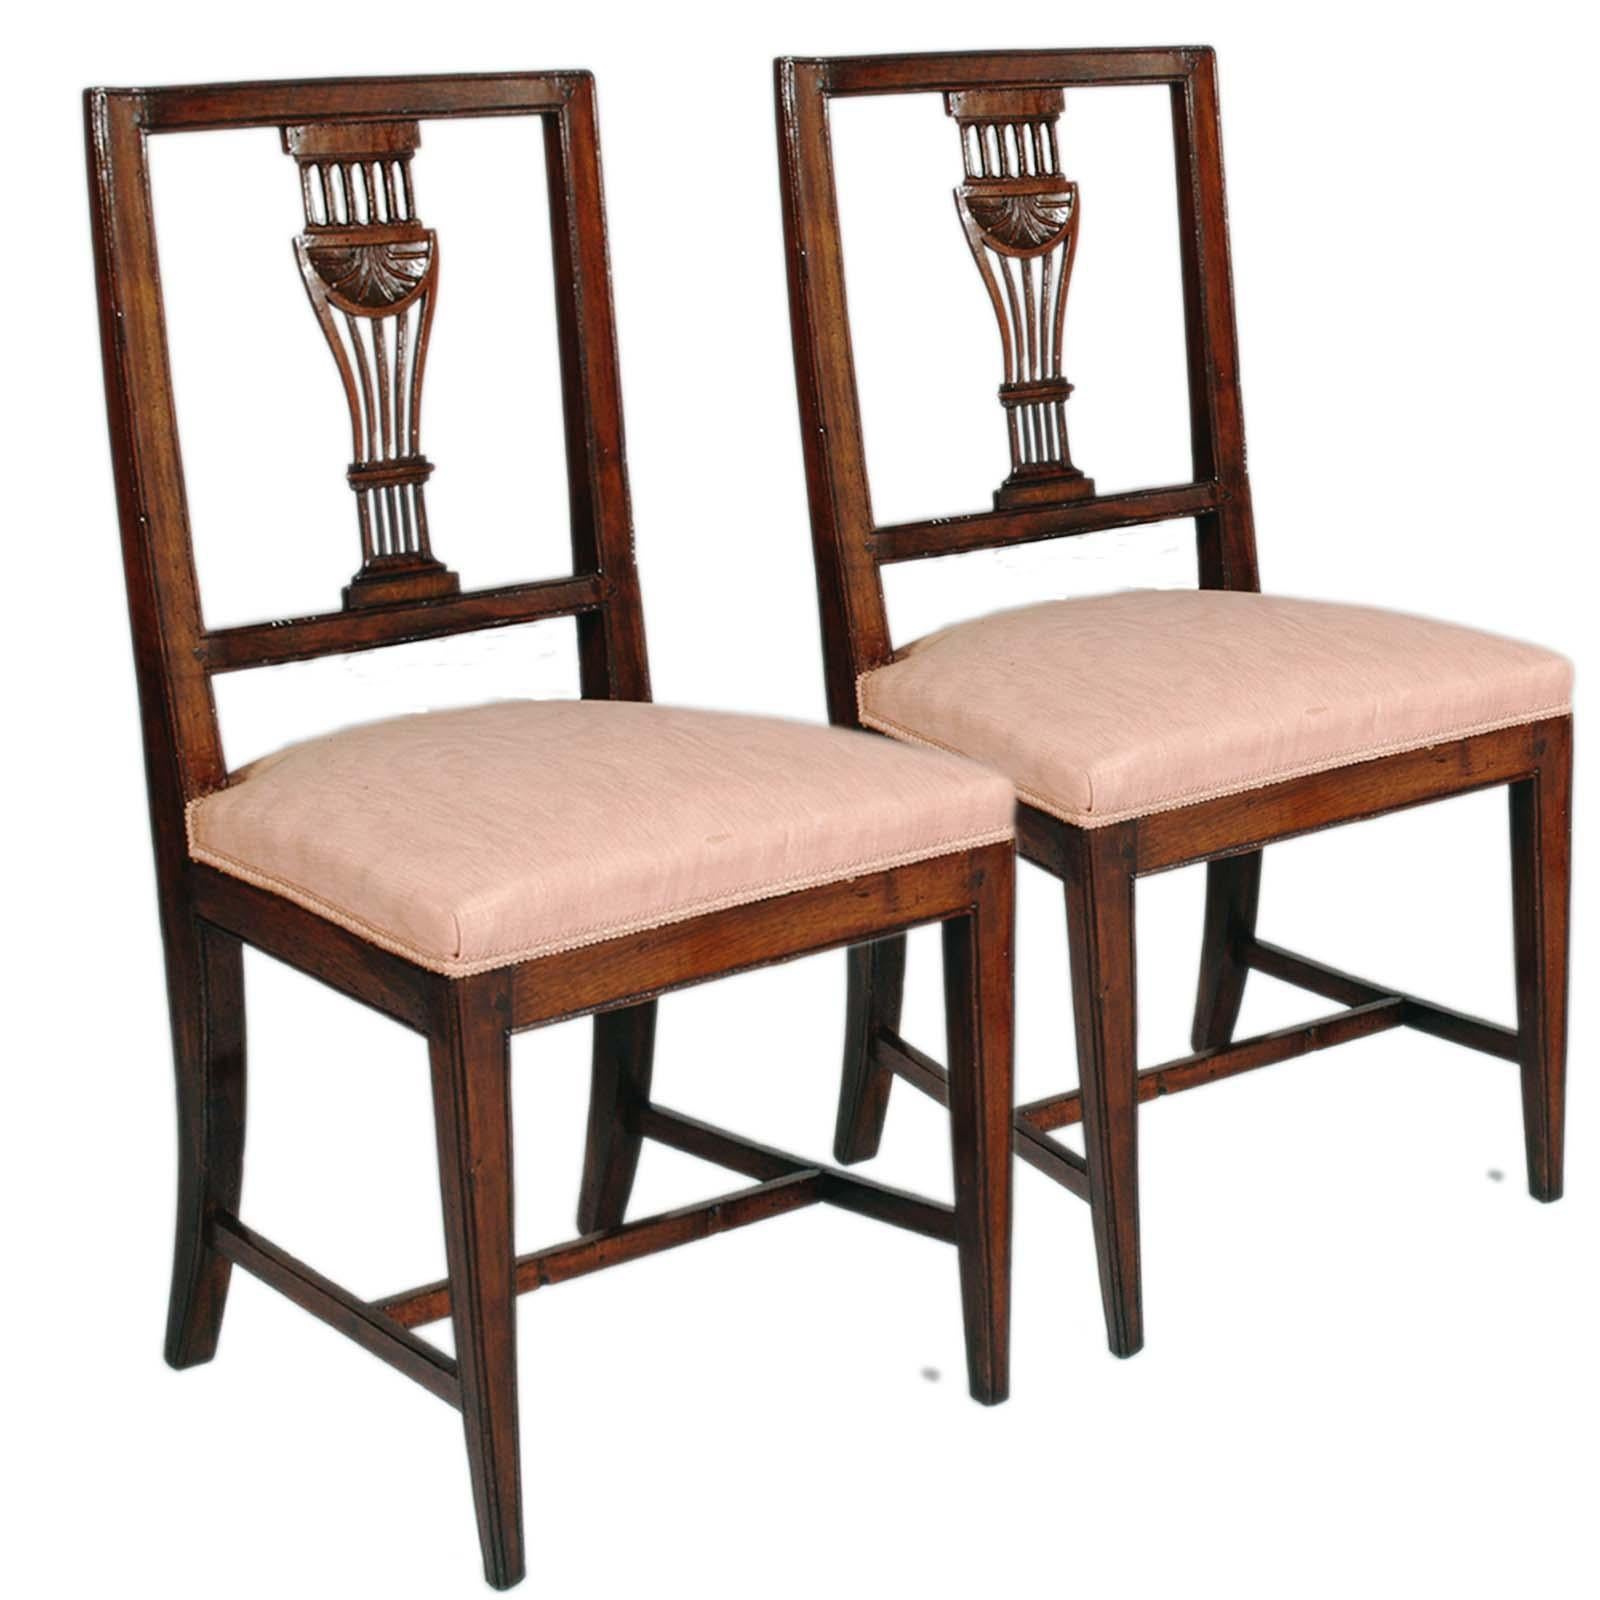 Italian Venetian Six Asolane Biedermeier Chairs in Walnut, Lyre-Shaped Back, Hand-Carved For Sale